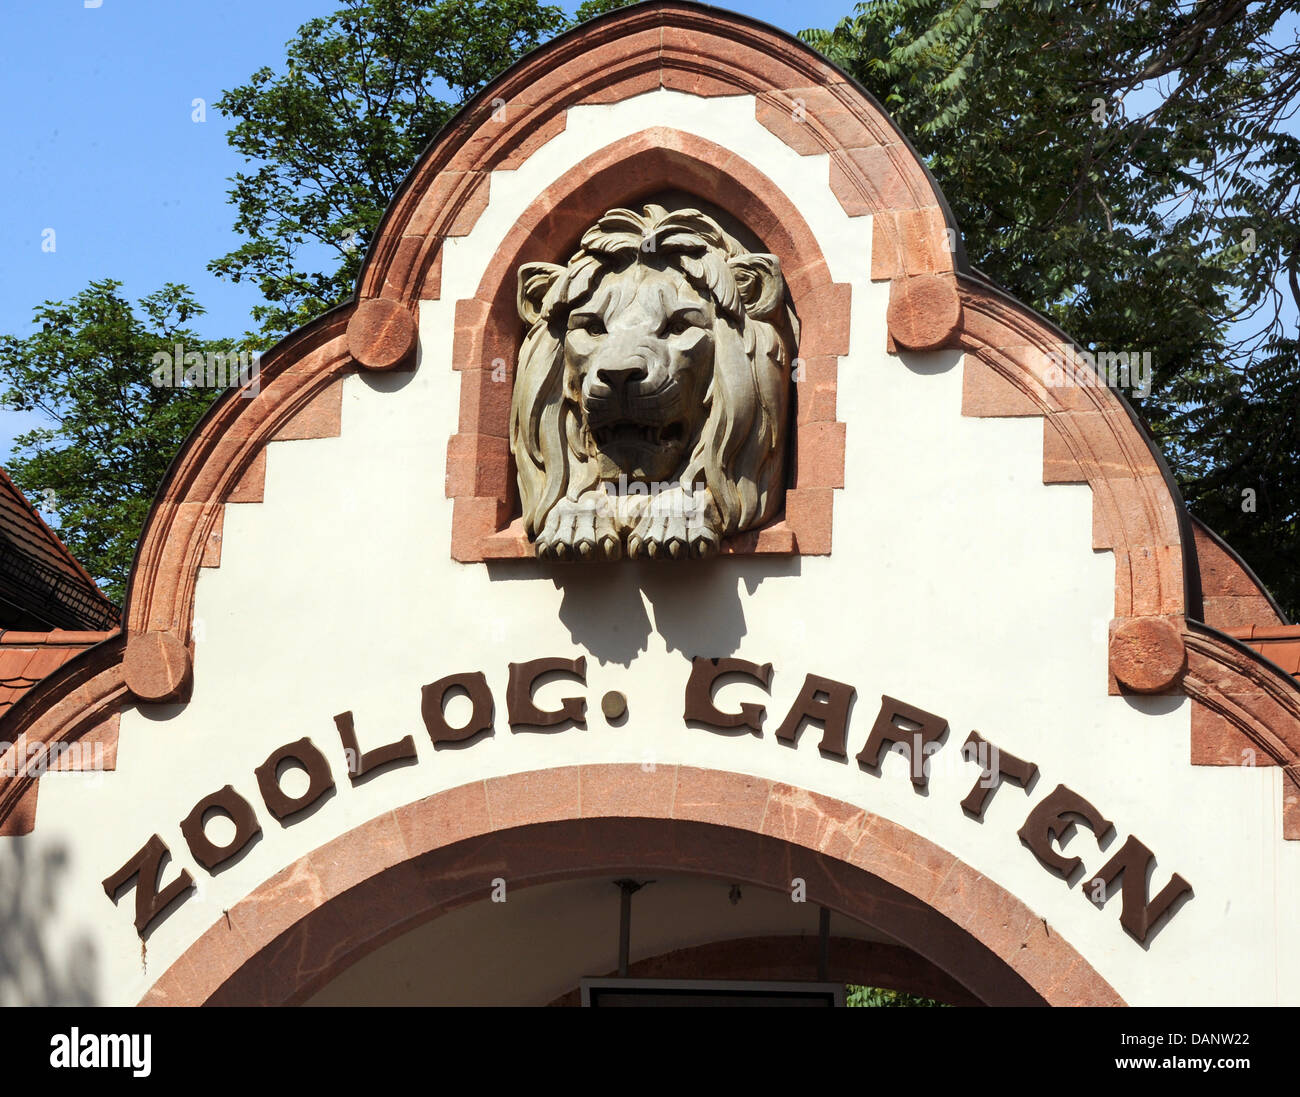 Un ingresso allo zoo è raffigurato in Leipzig, Germania, il 3 giugno 2011. Per dieci anni gli scienziati di esplorare il comportamento delle grandi scimmie negli zoo Pongoland distretto. Il progetto è stato fondato nel 1999 e riceverà 130 milioni di euro fino al 2015. Foto: Waltraud Grubitzsch Foto Stock